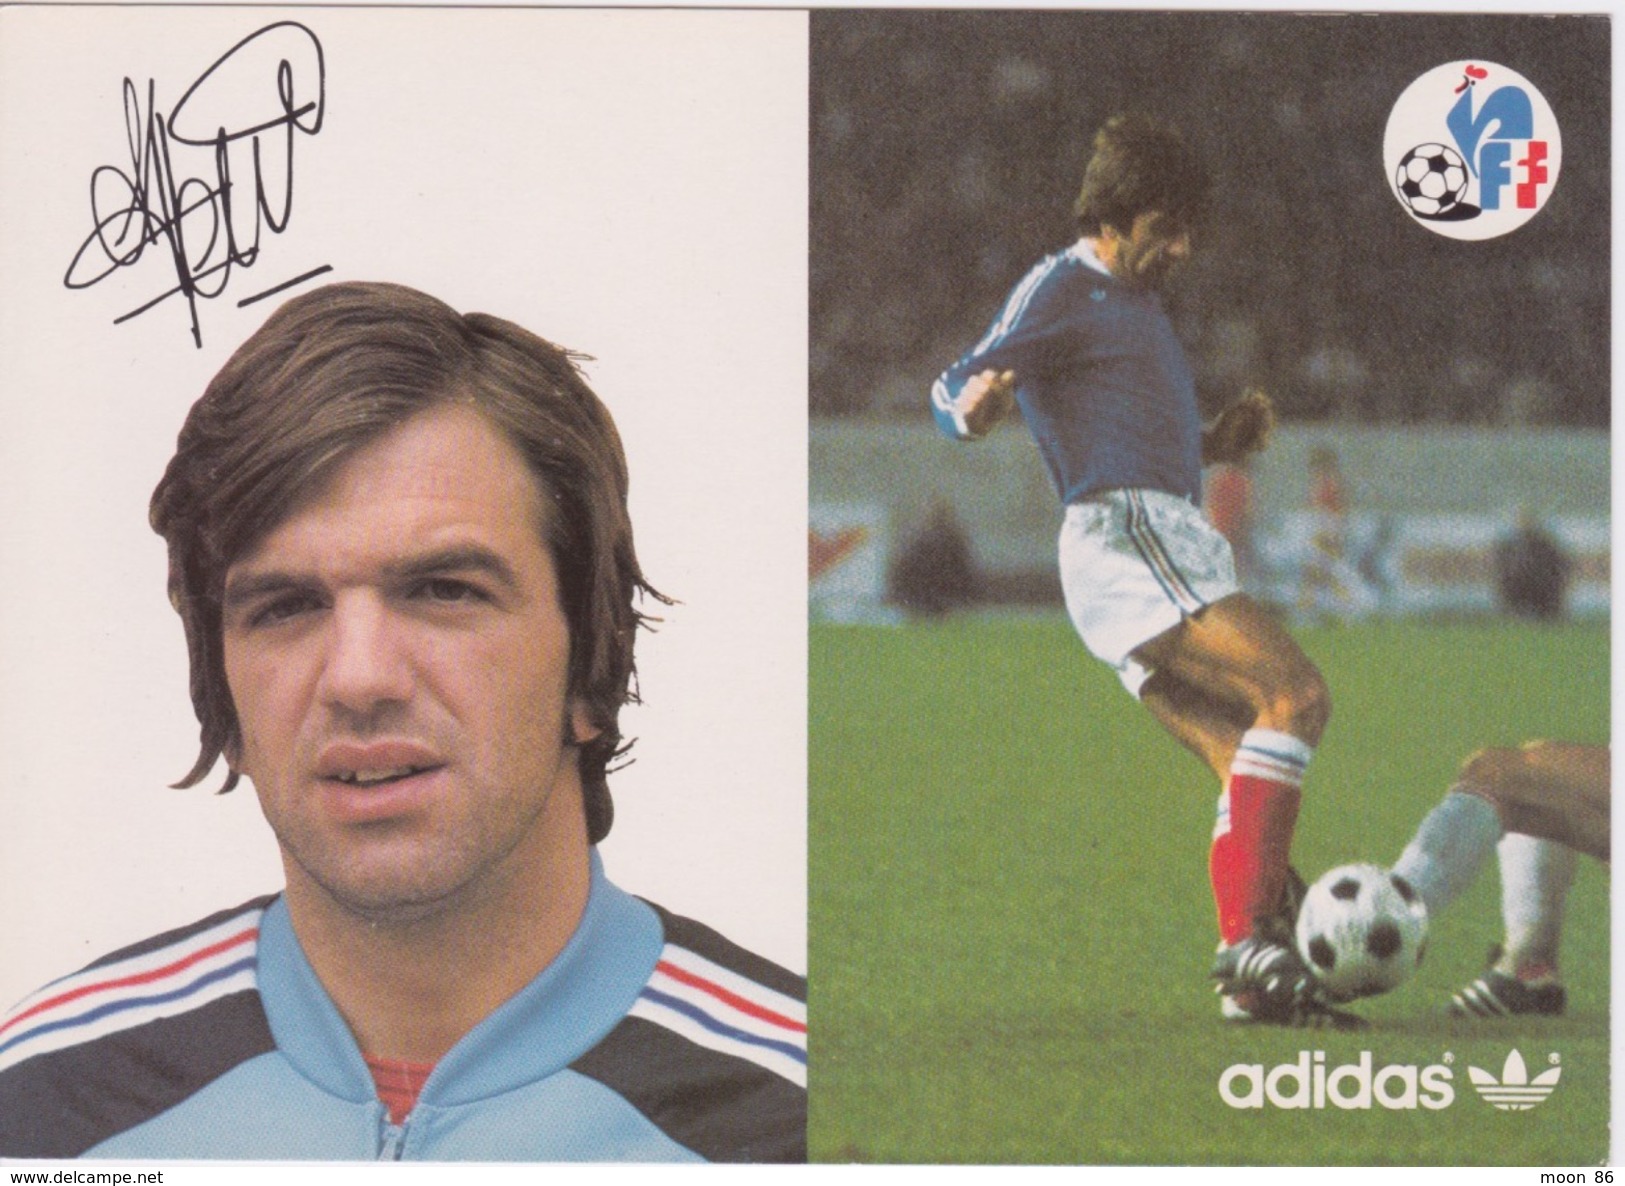 13 cartes postale - Equipe de France   FOOTBALL 1978 - CARTE ORIGINALE DE LA FFF & ADIDAS